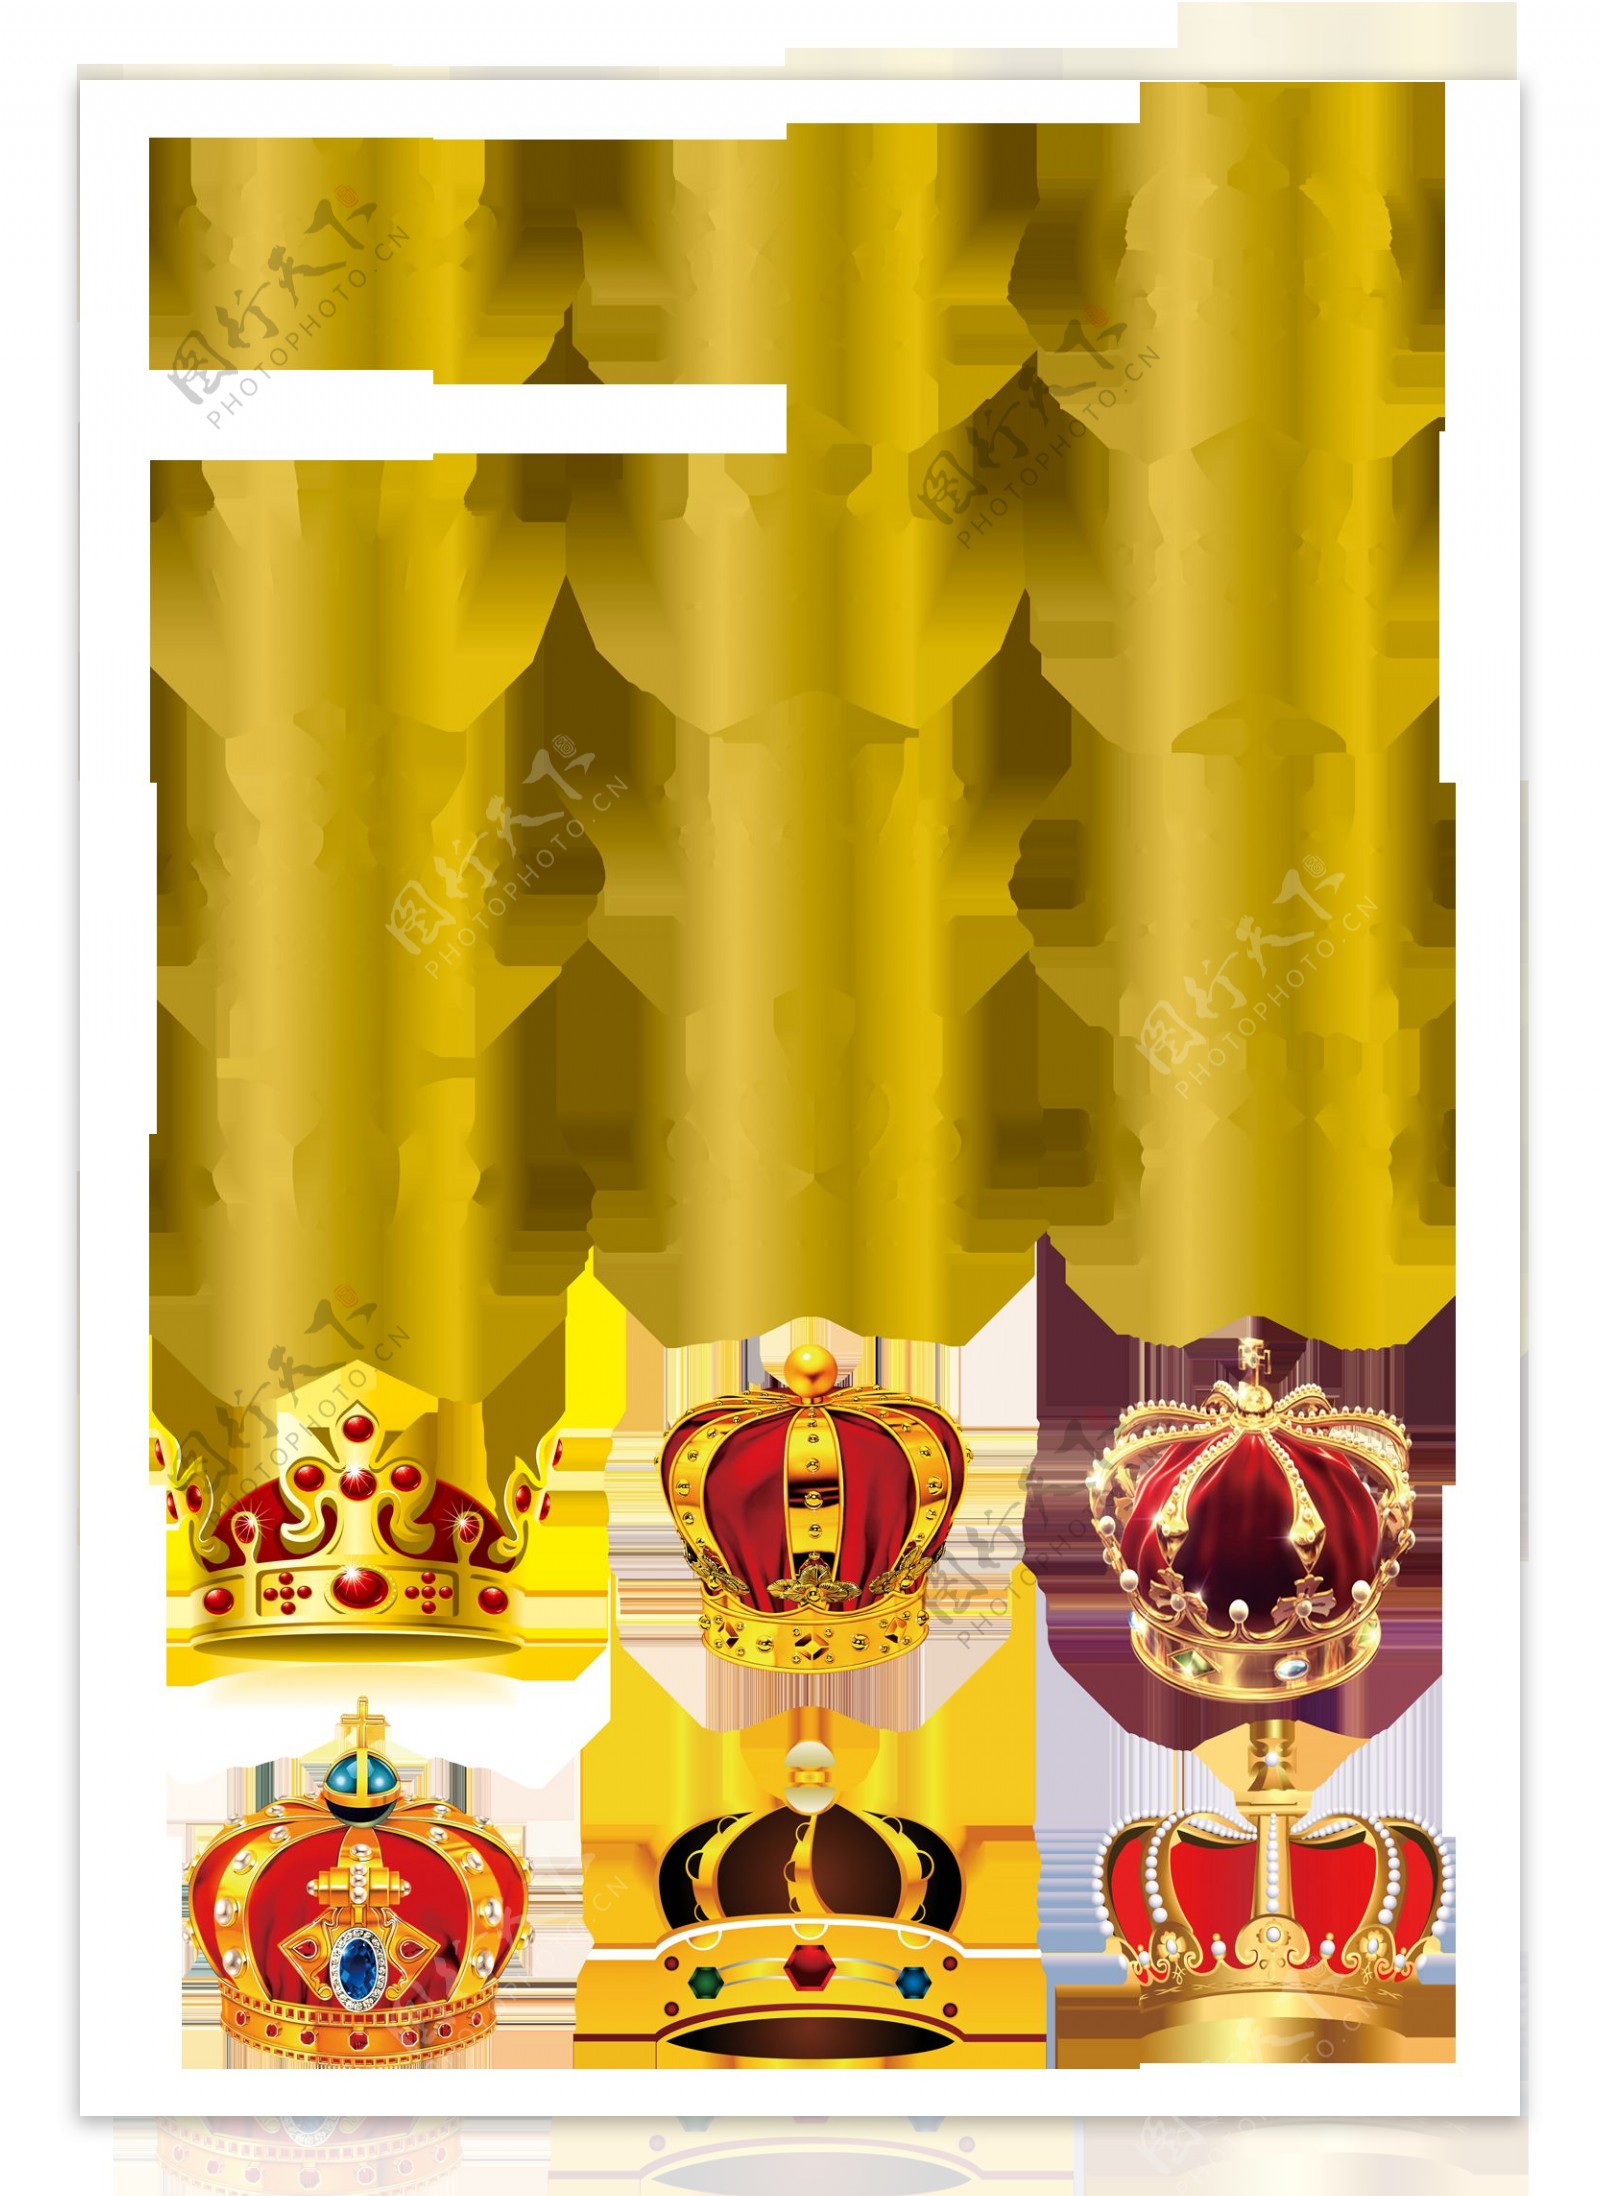 欧式金色皇冠图标合集png元素